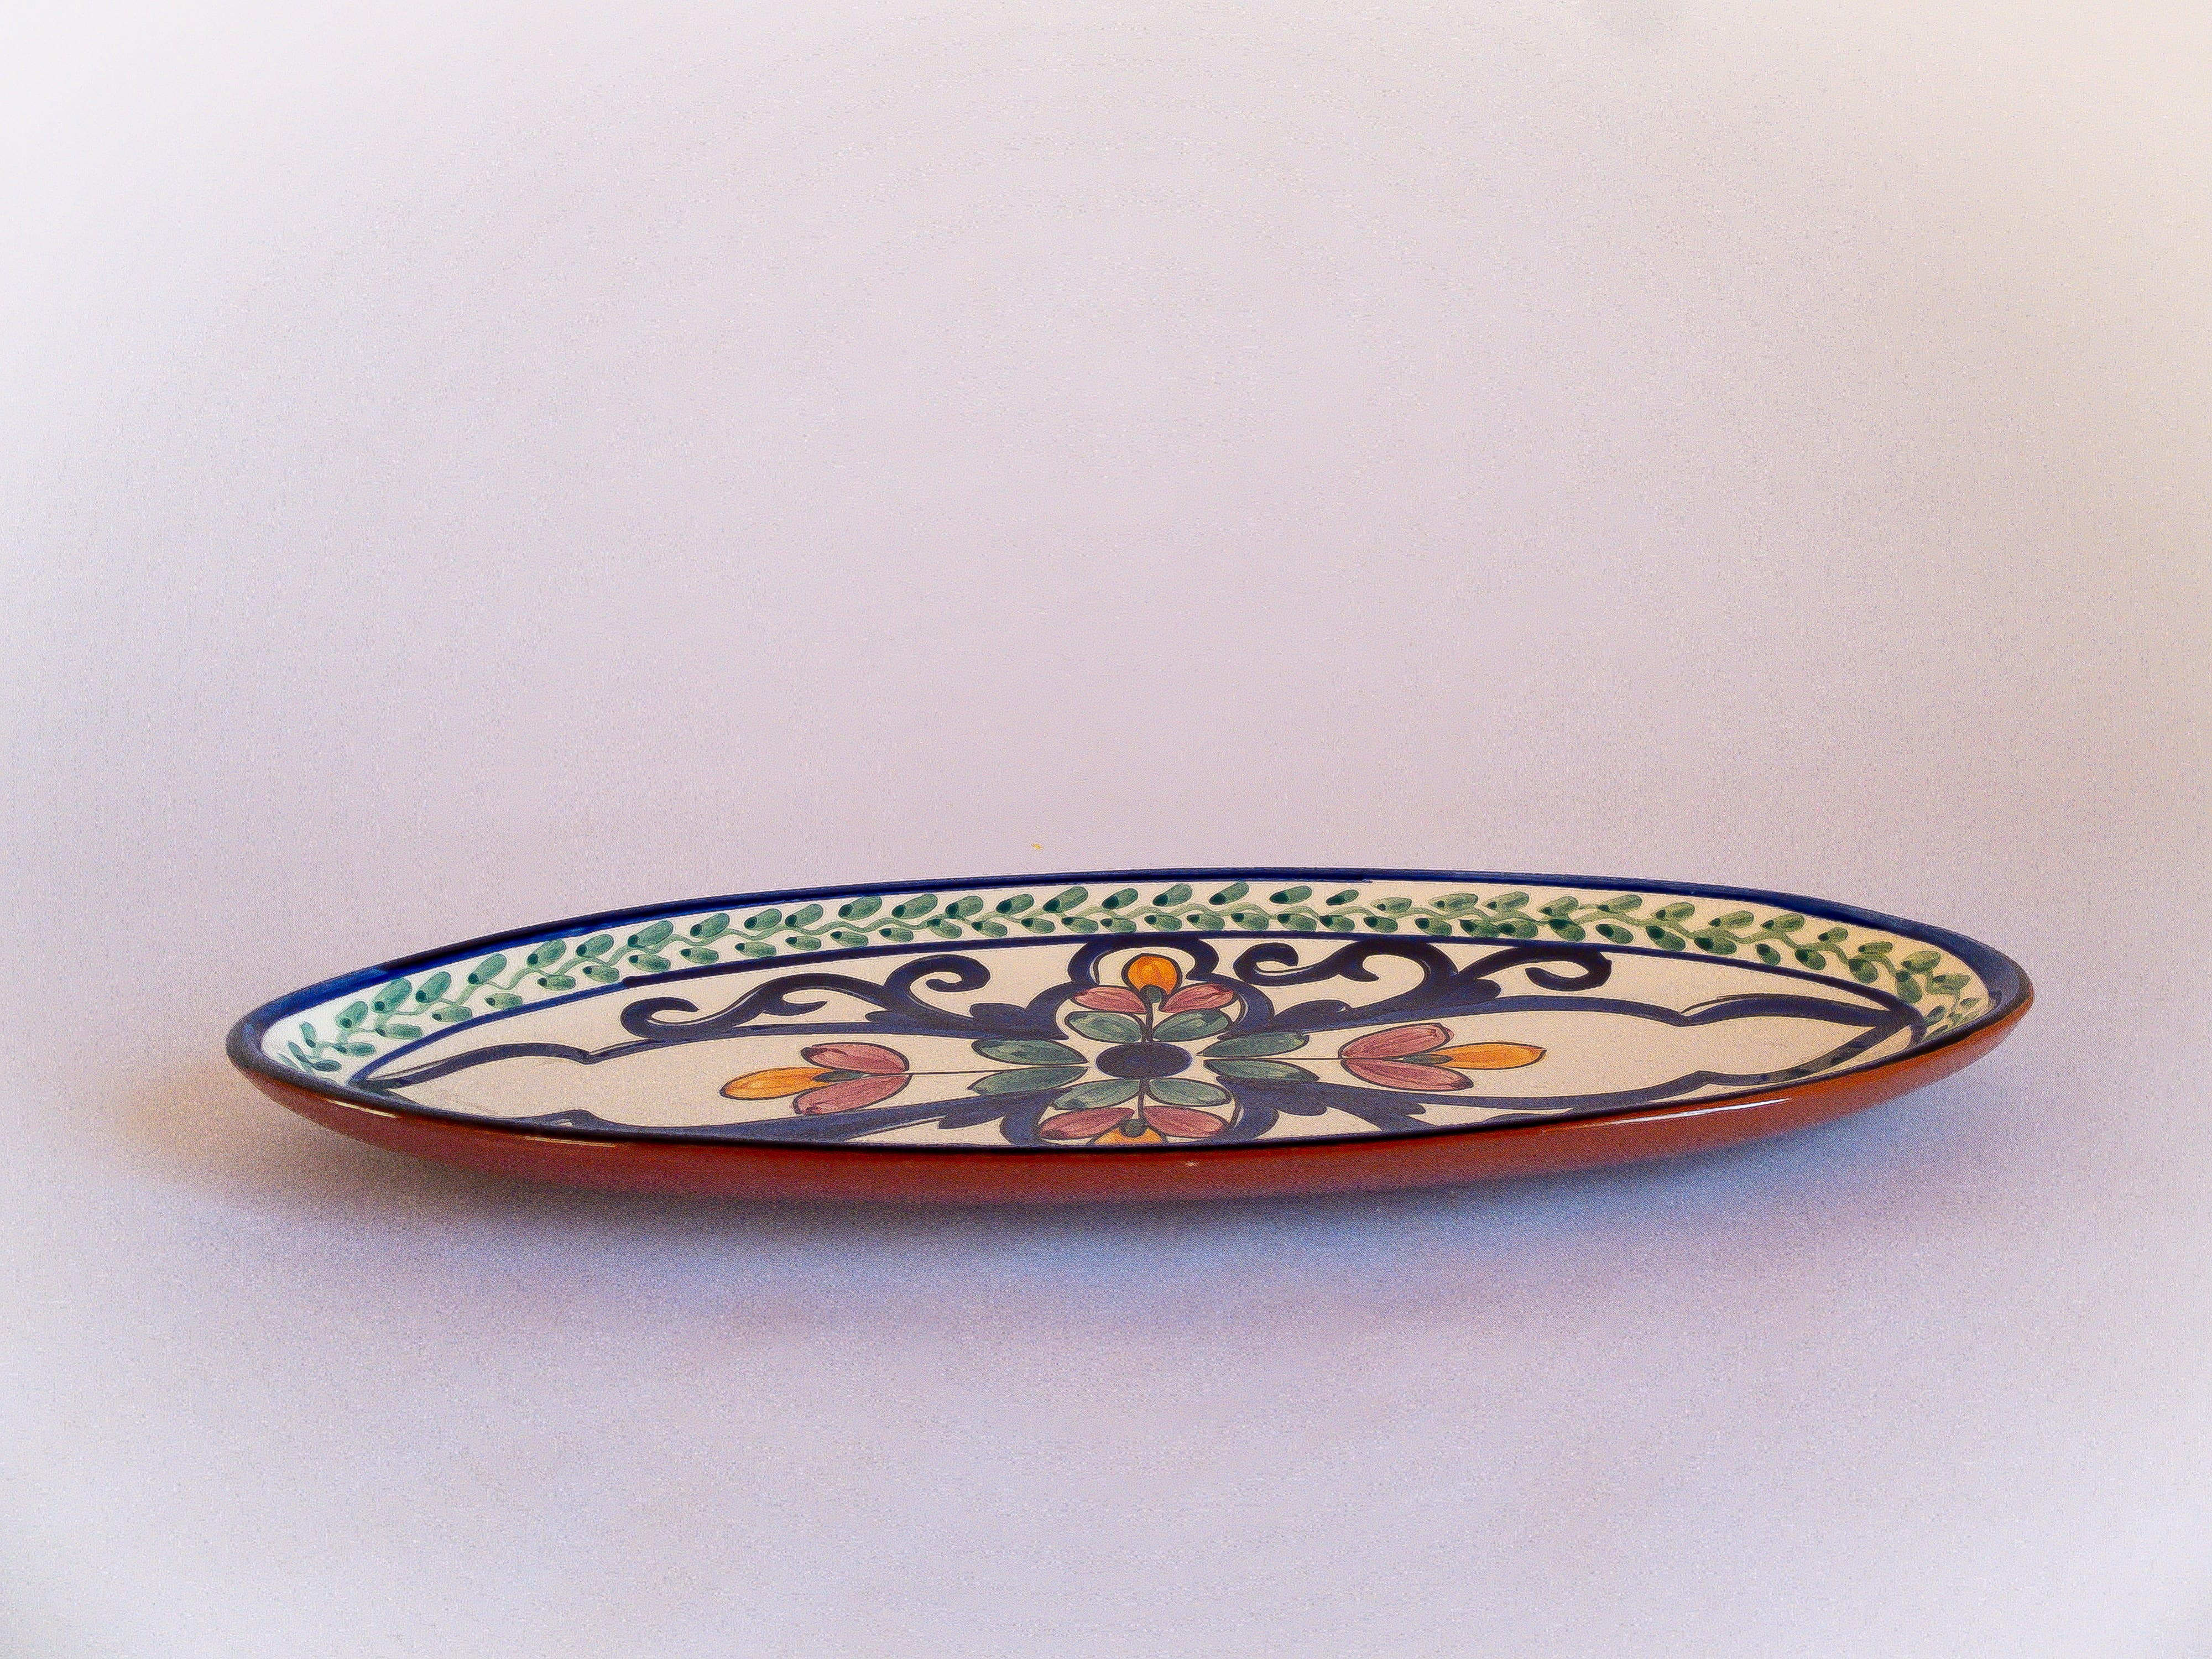 Plat de présentation oval fabriqué et peint artisanalement au Portugal, à motifs floraux et colorés